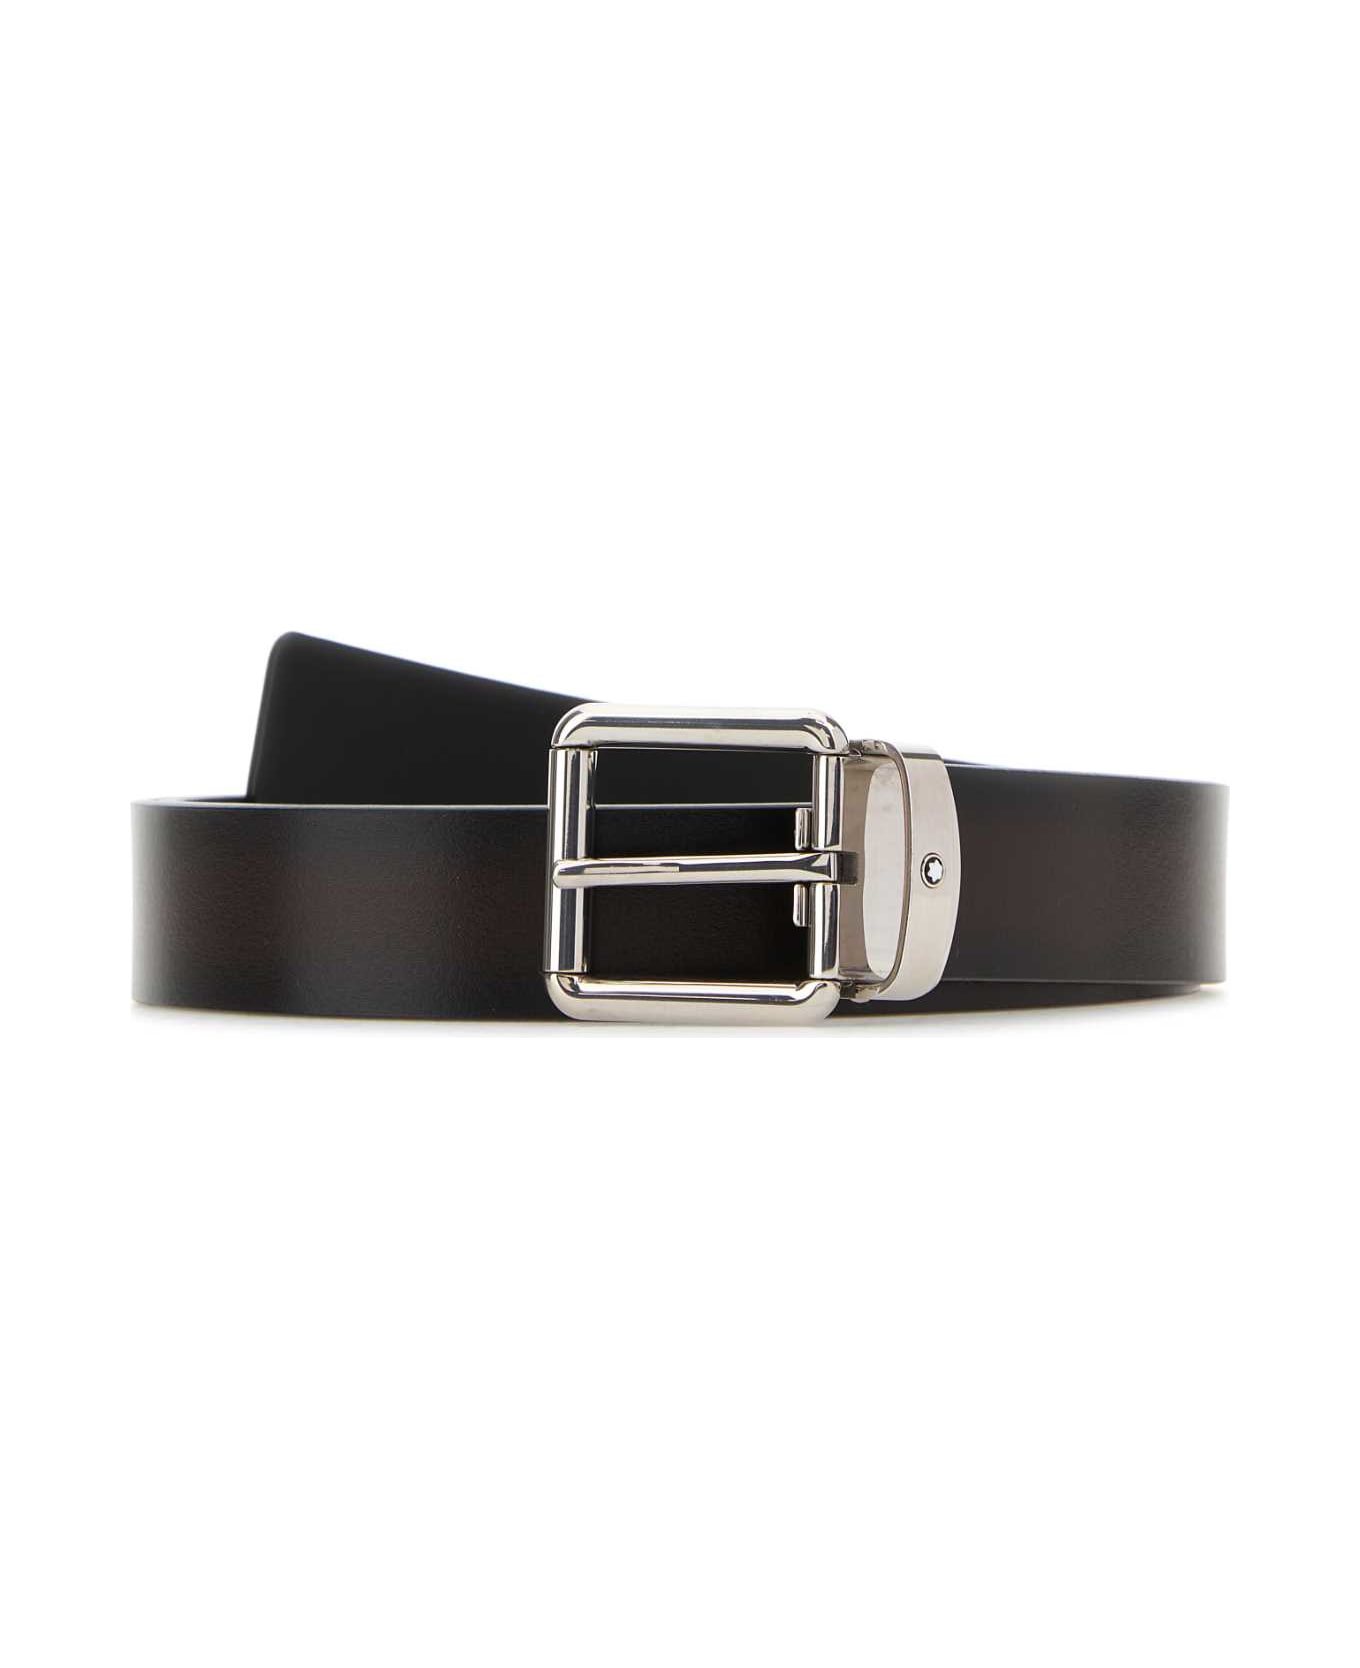 Montblanc Dark Brown Leather Belt - BROWNSFUMATO name:456